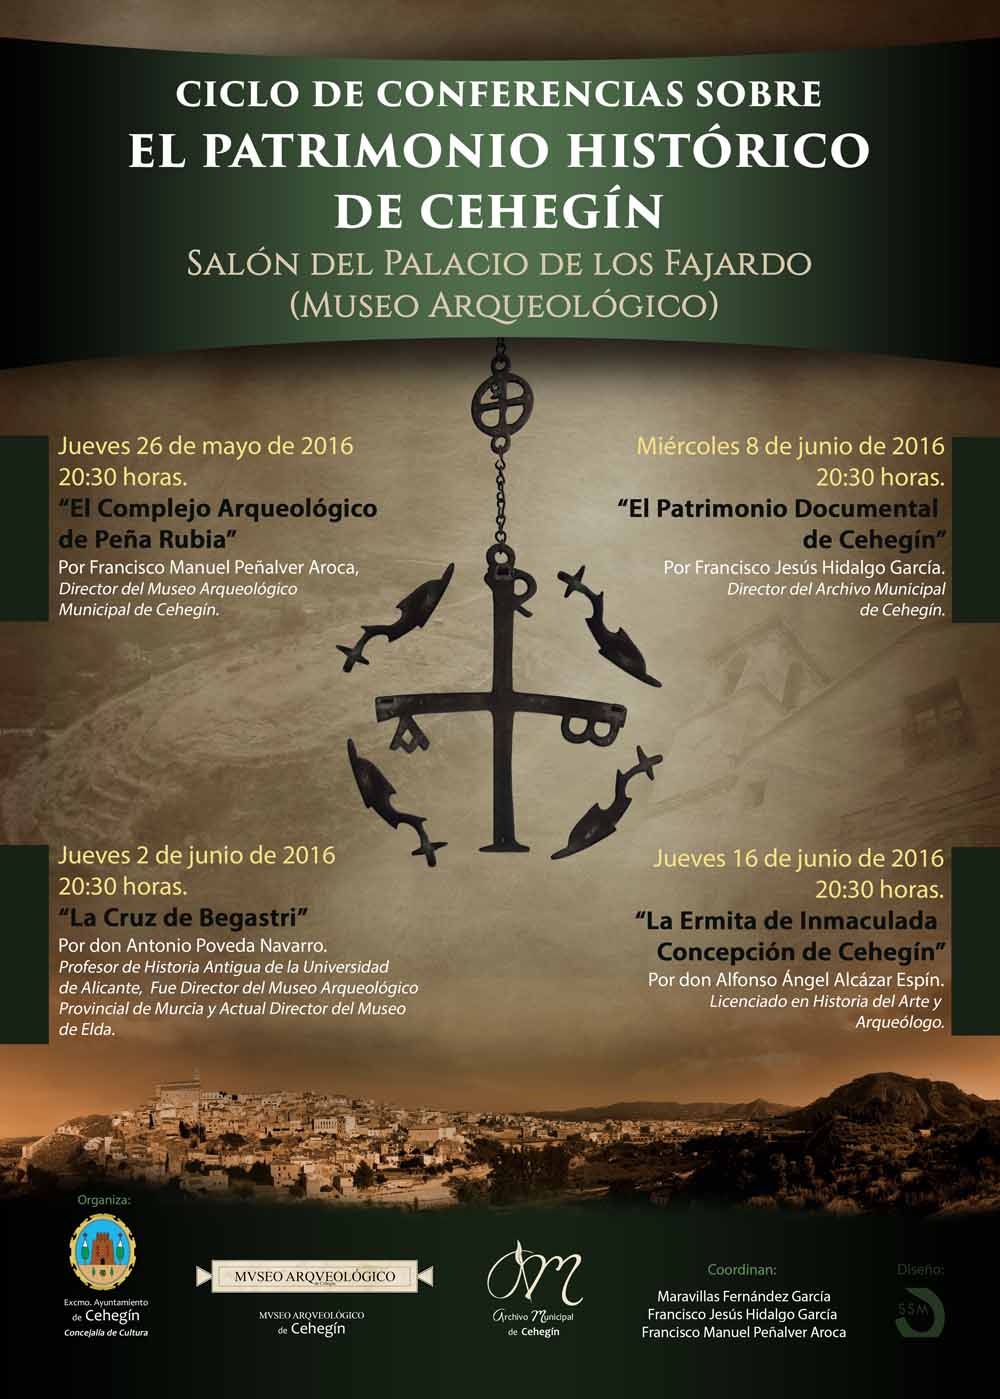 Francisco Jesús Hidalgo hablará mañana sobre “El Patrimonio Documental de Cehegín” en el Ciclo sobre Patrimonio Histórico.